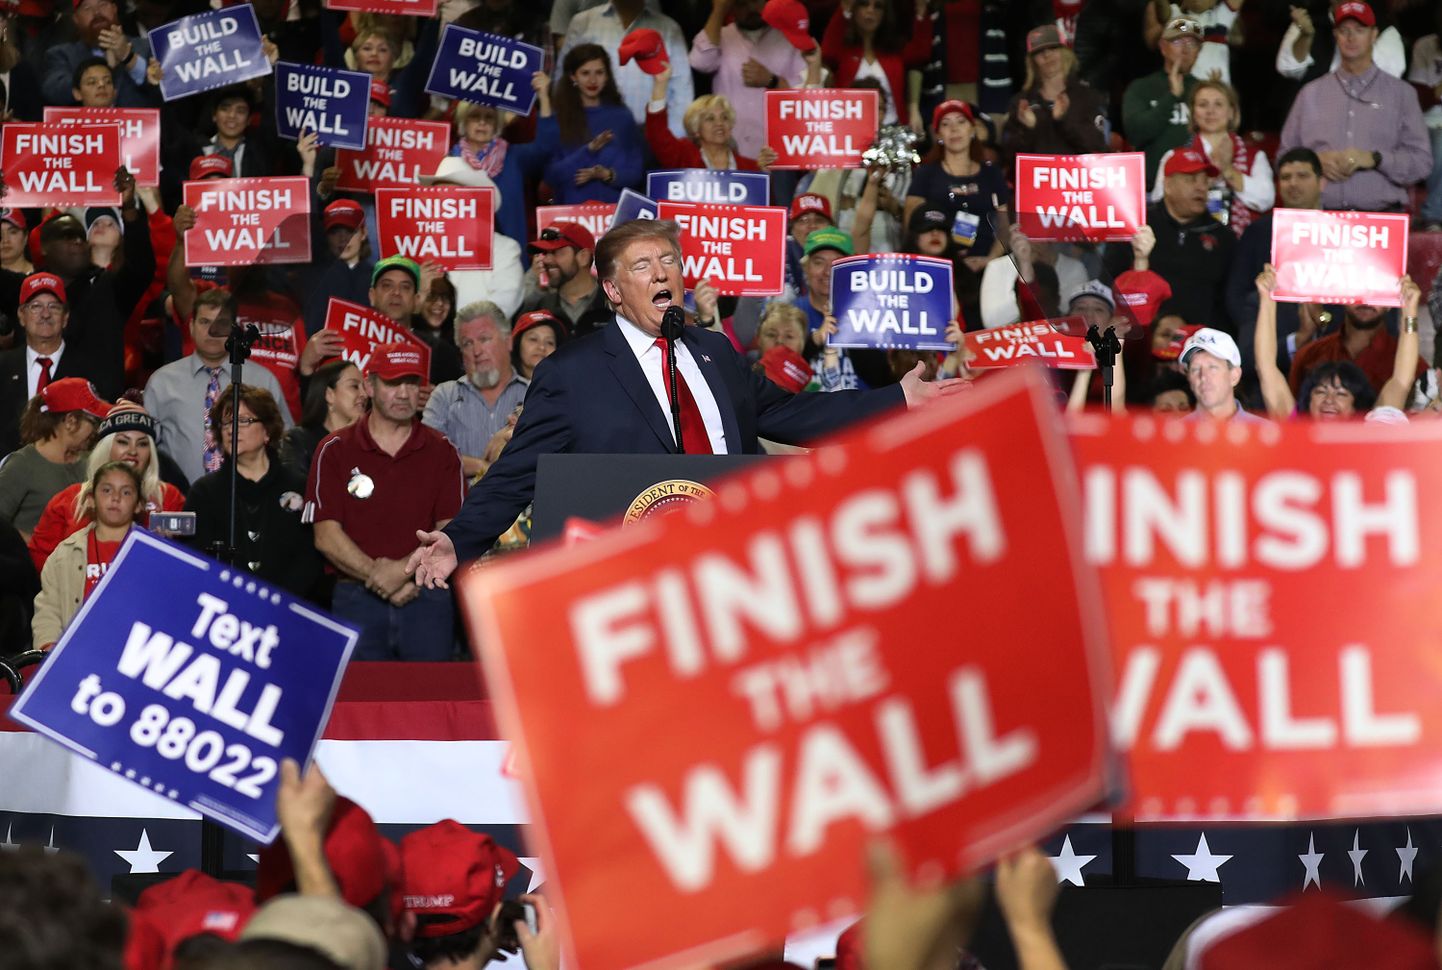 Kuigi USA kongress ei nõustu rahastama Ühendriikide-Mehhiko piirimüüri president Donald Trumpi nõutud summas, kinnitas president eile Texase osariigis toimunud kampaaniaüritusel, et täidab oma 2016. aasta valimislubaduse sõltumata kongressi tahtest.